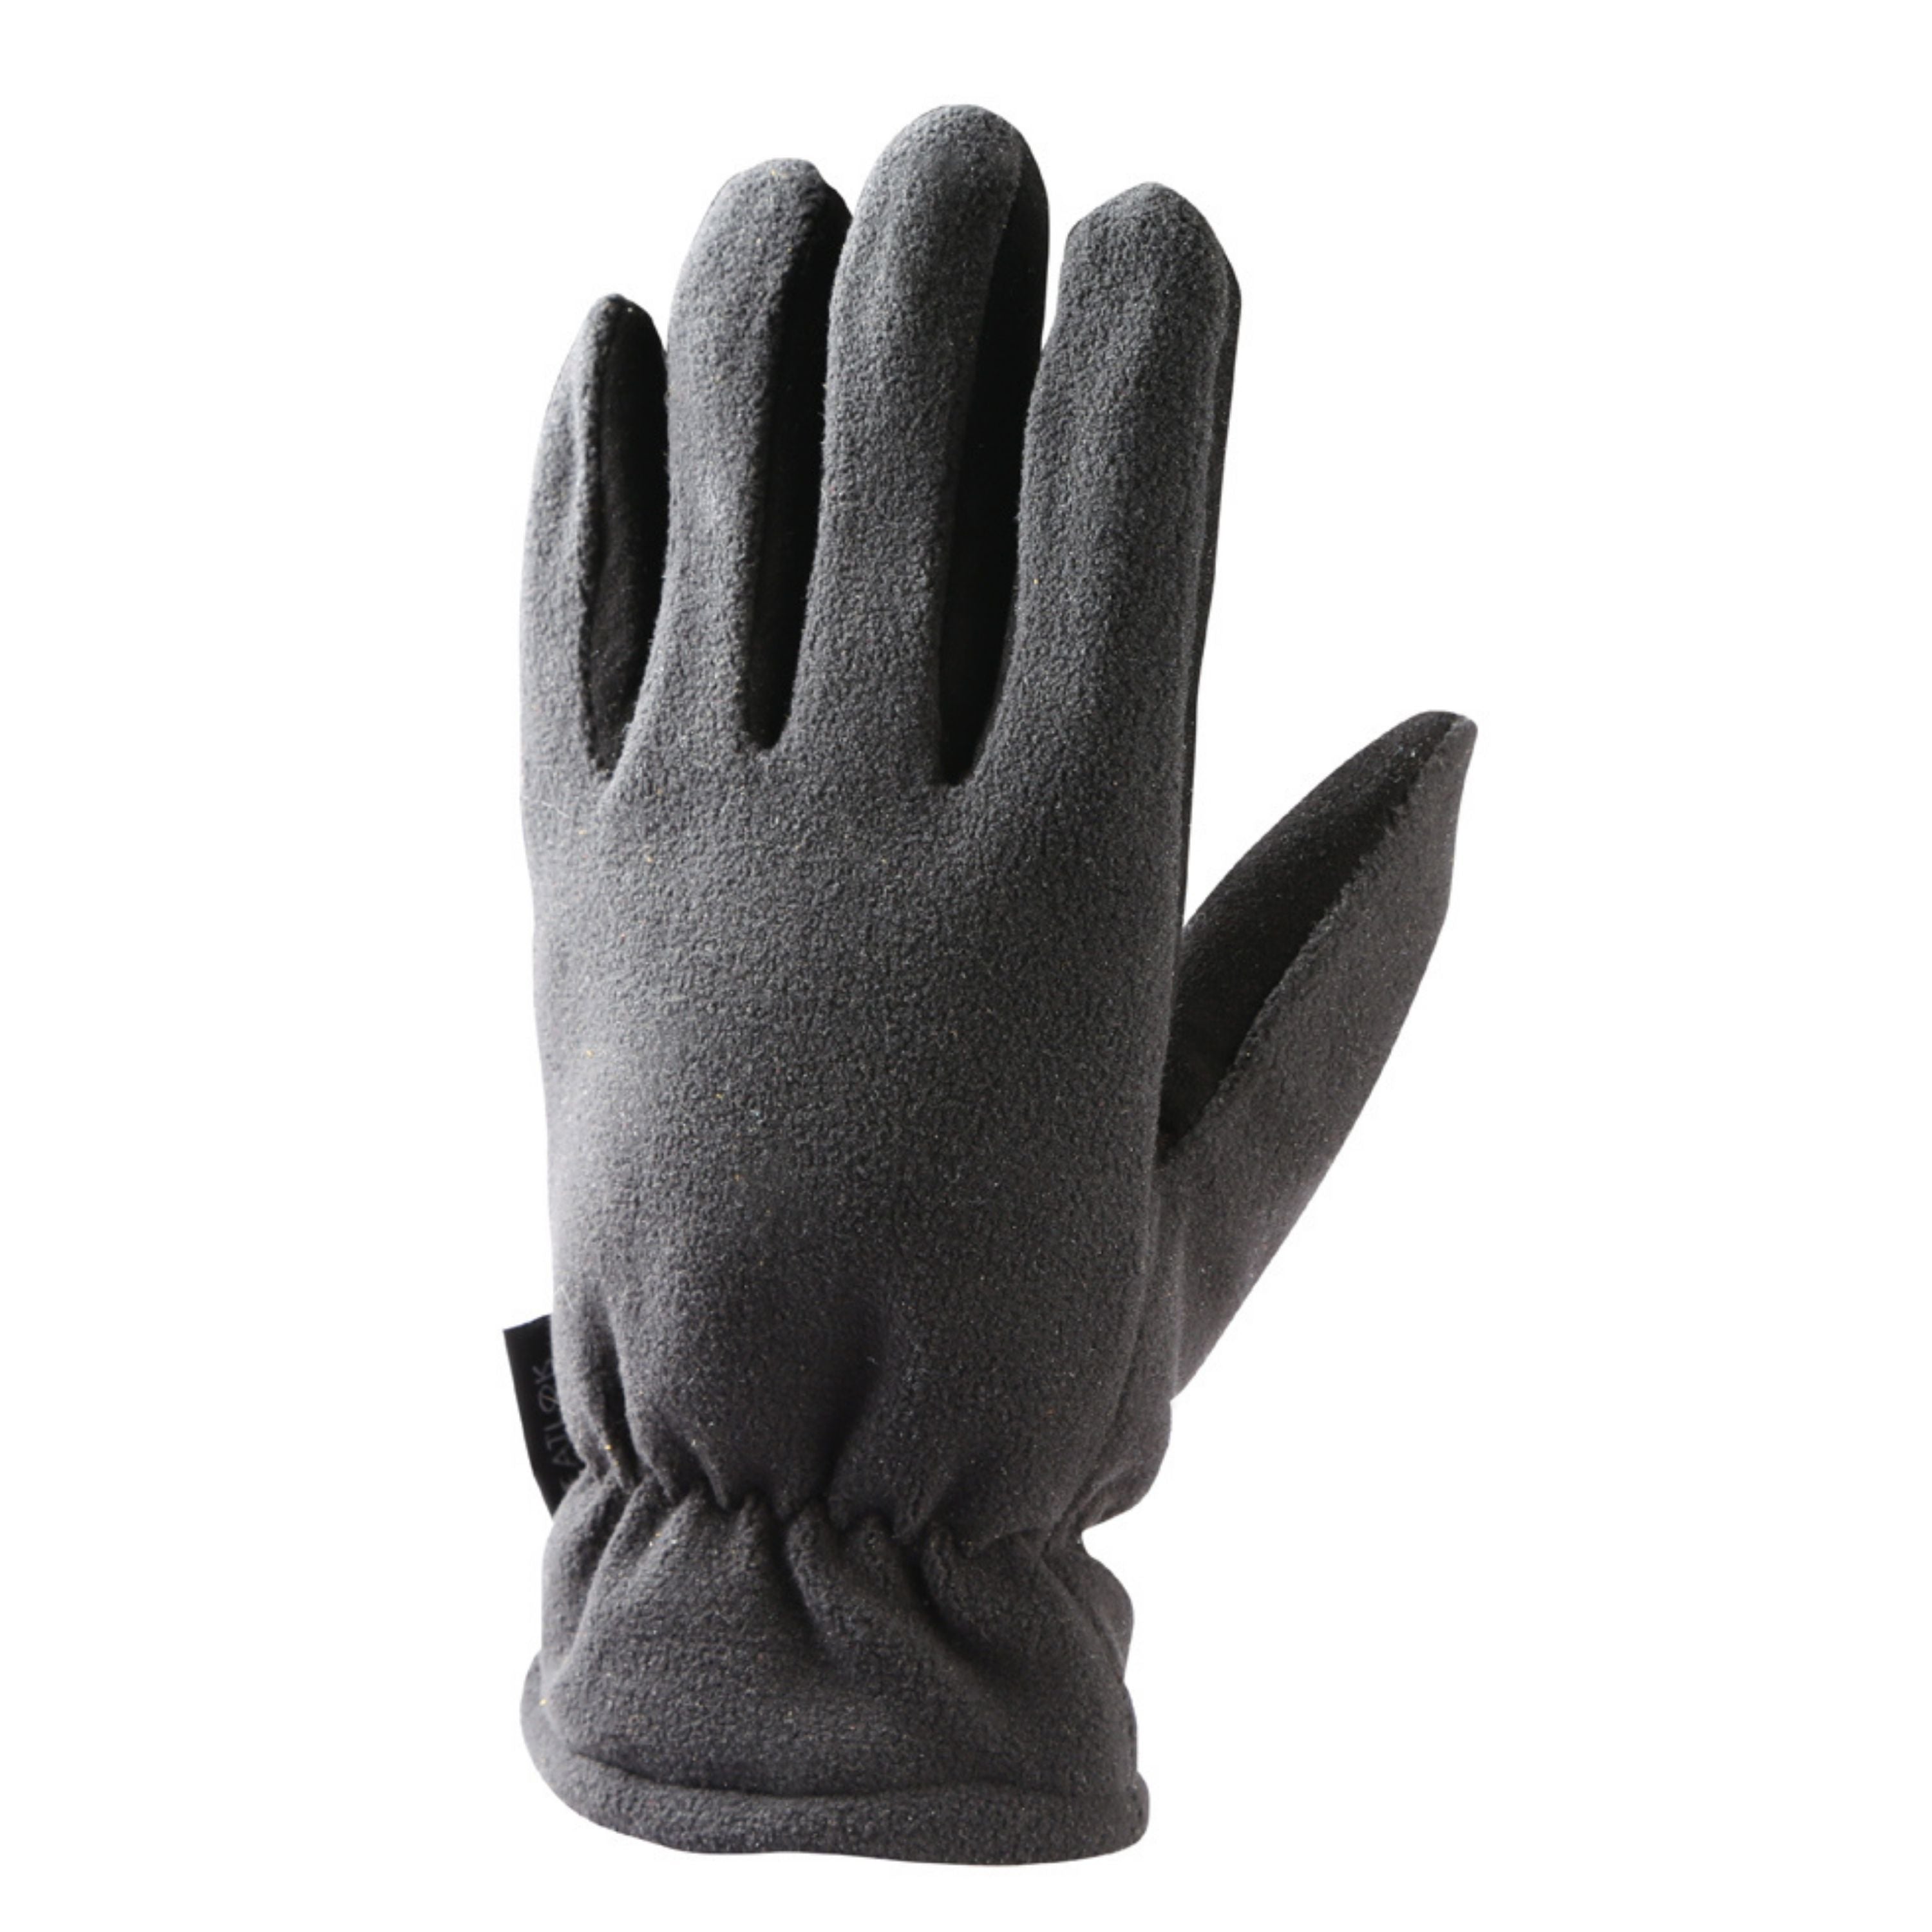 Fall/Winter gloves - Men's